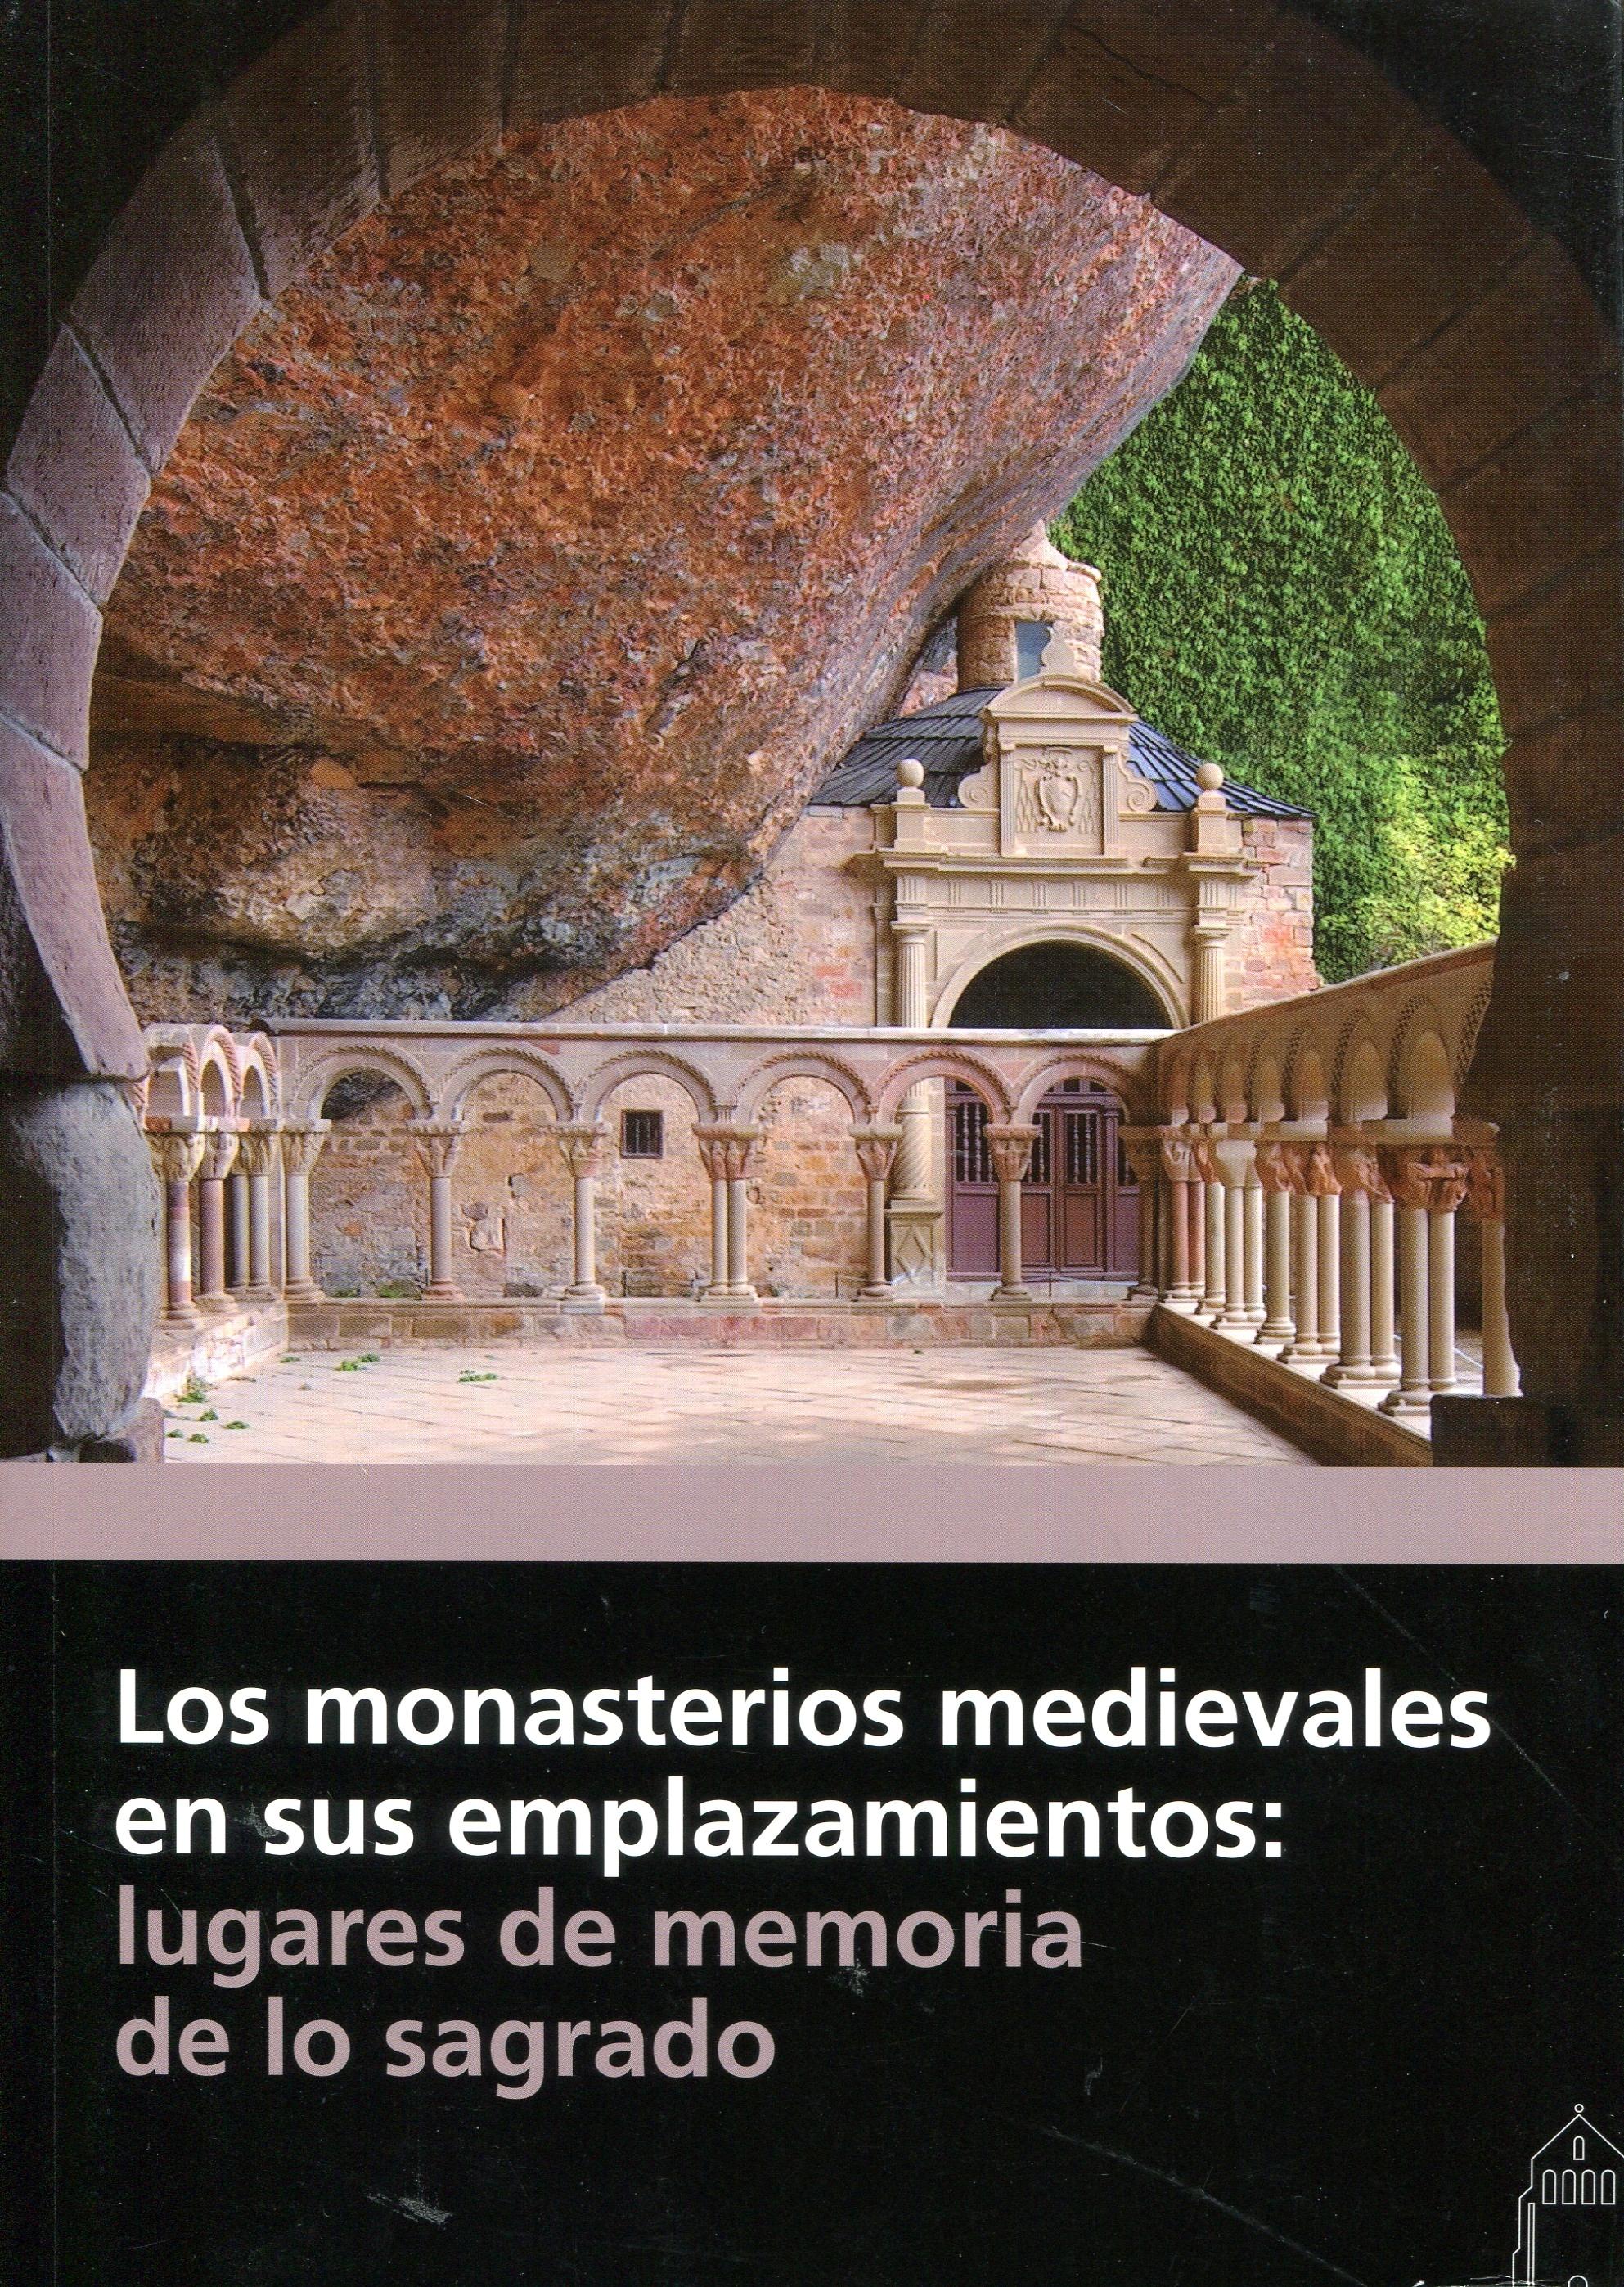 Los monasterios medievales y sus emplazamientos "Lugares de memoria de lo sagrado"